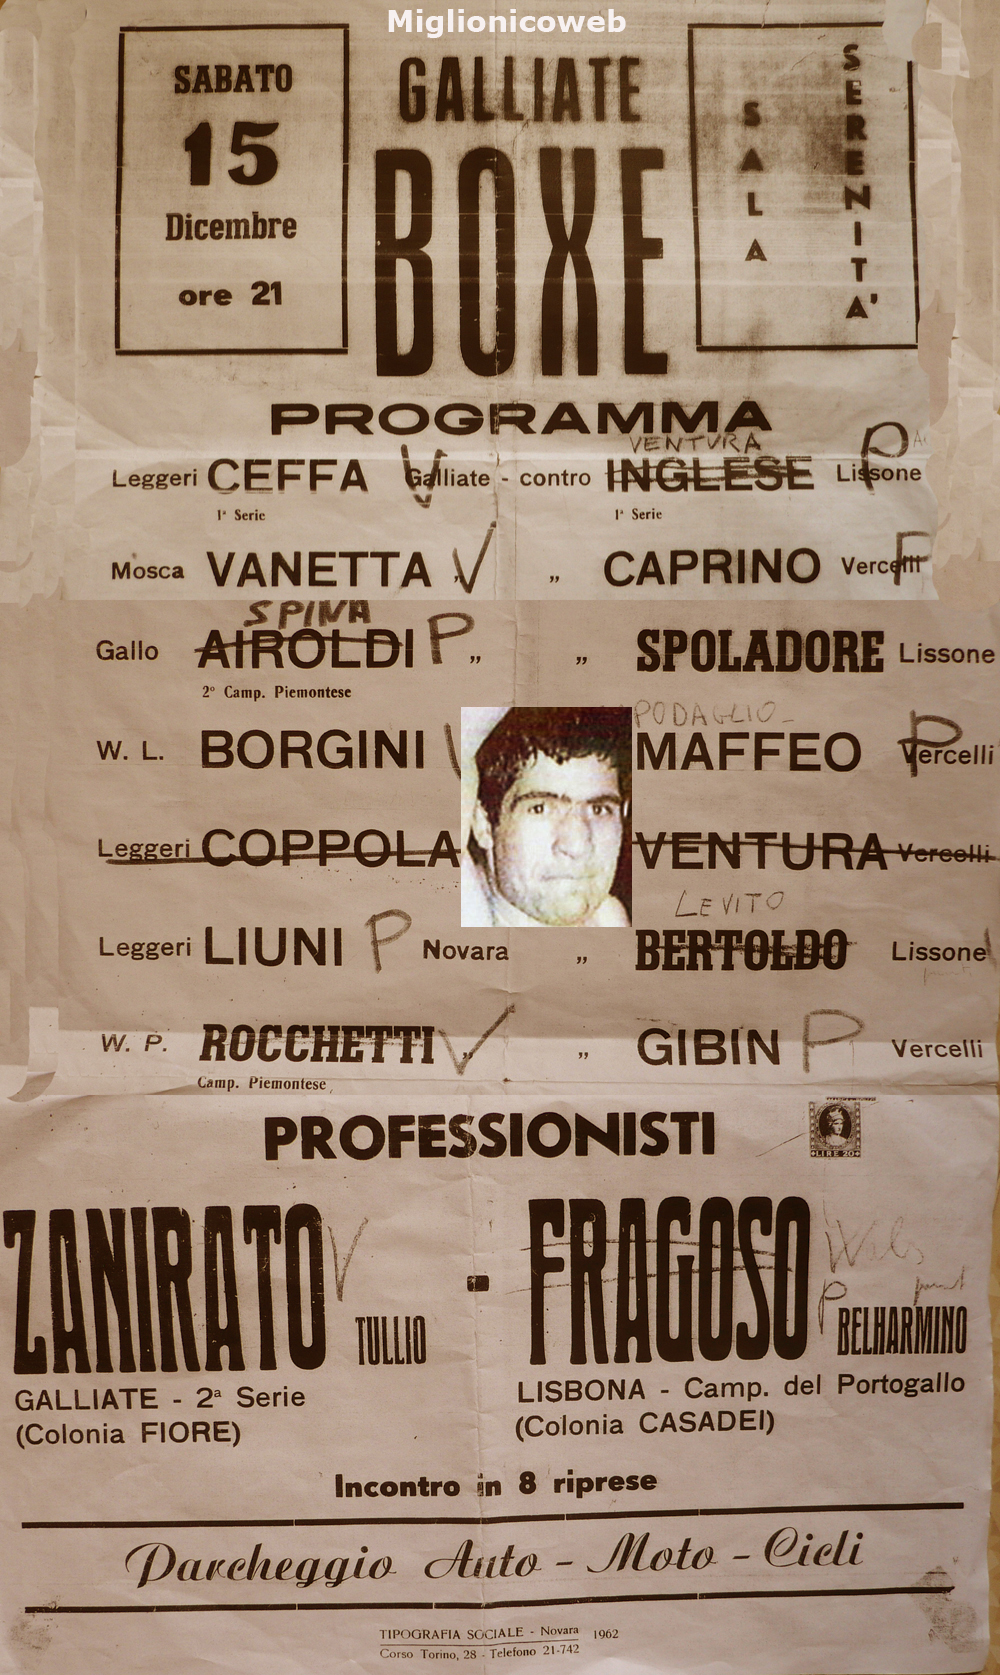 Manifesto dell'incontro di pugilato a Galliate il 75 Dicembre 1962